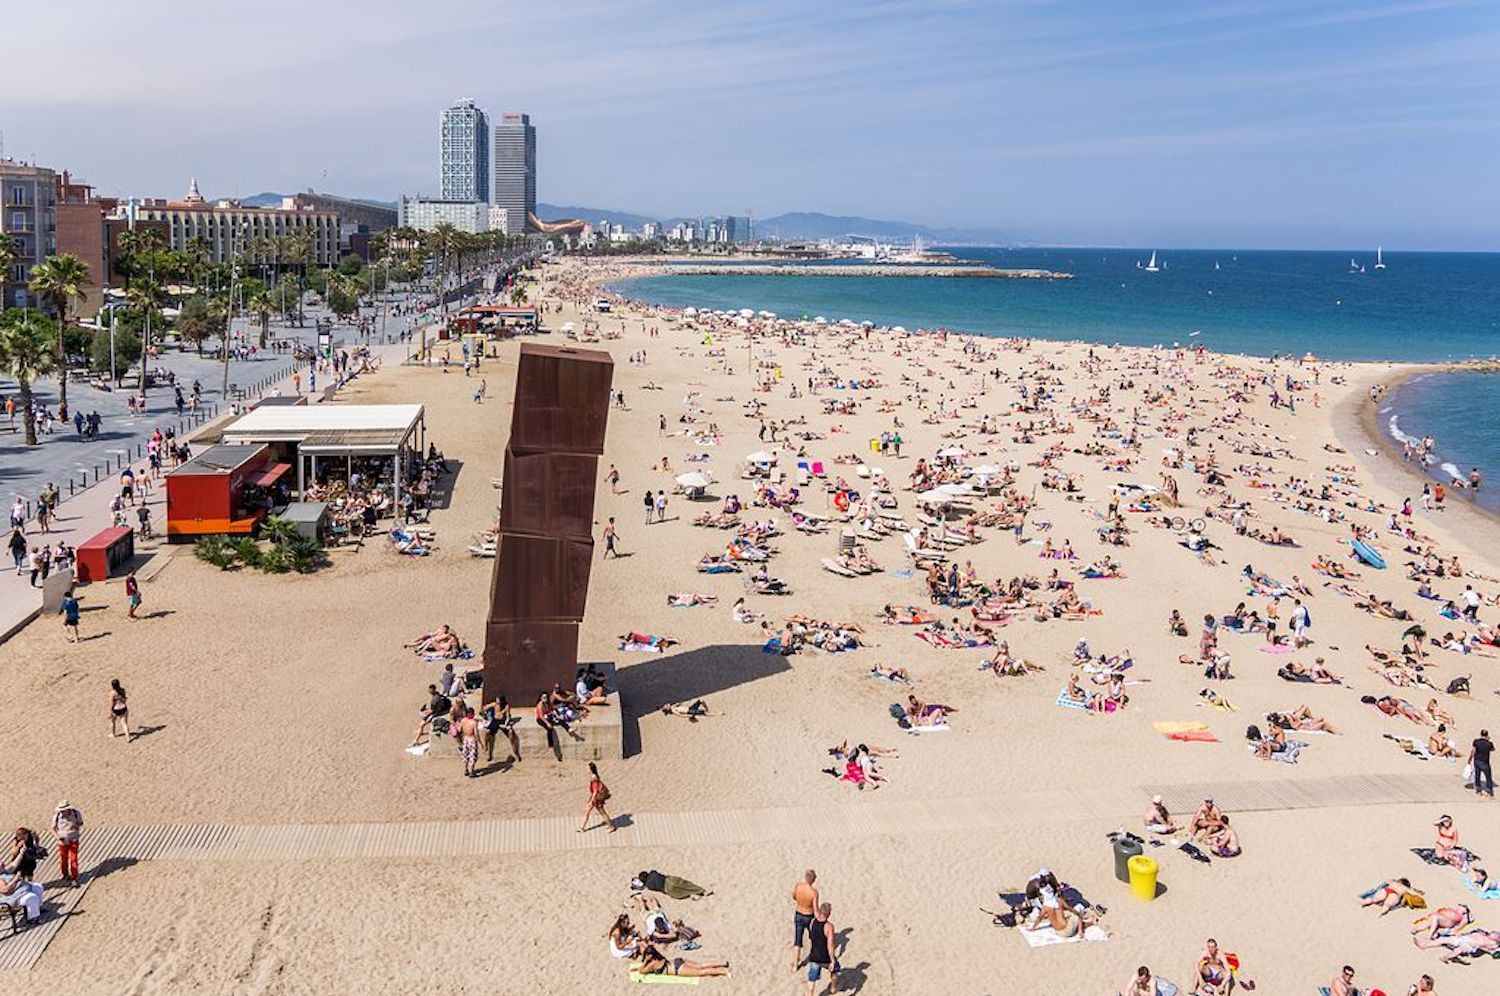 Bañistas en las playas de Barcelona / AYUNTAMIENTO DE BARCELONA